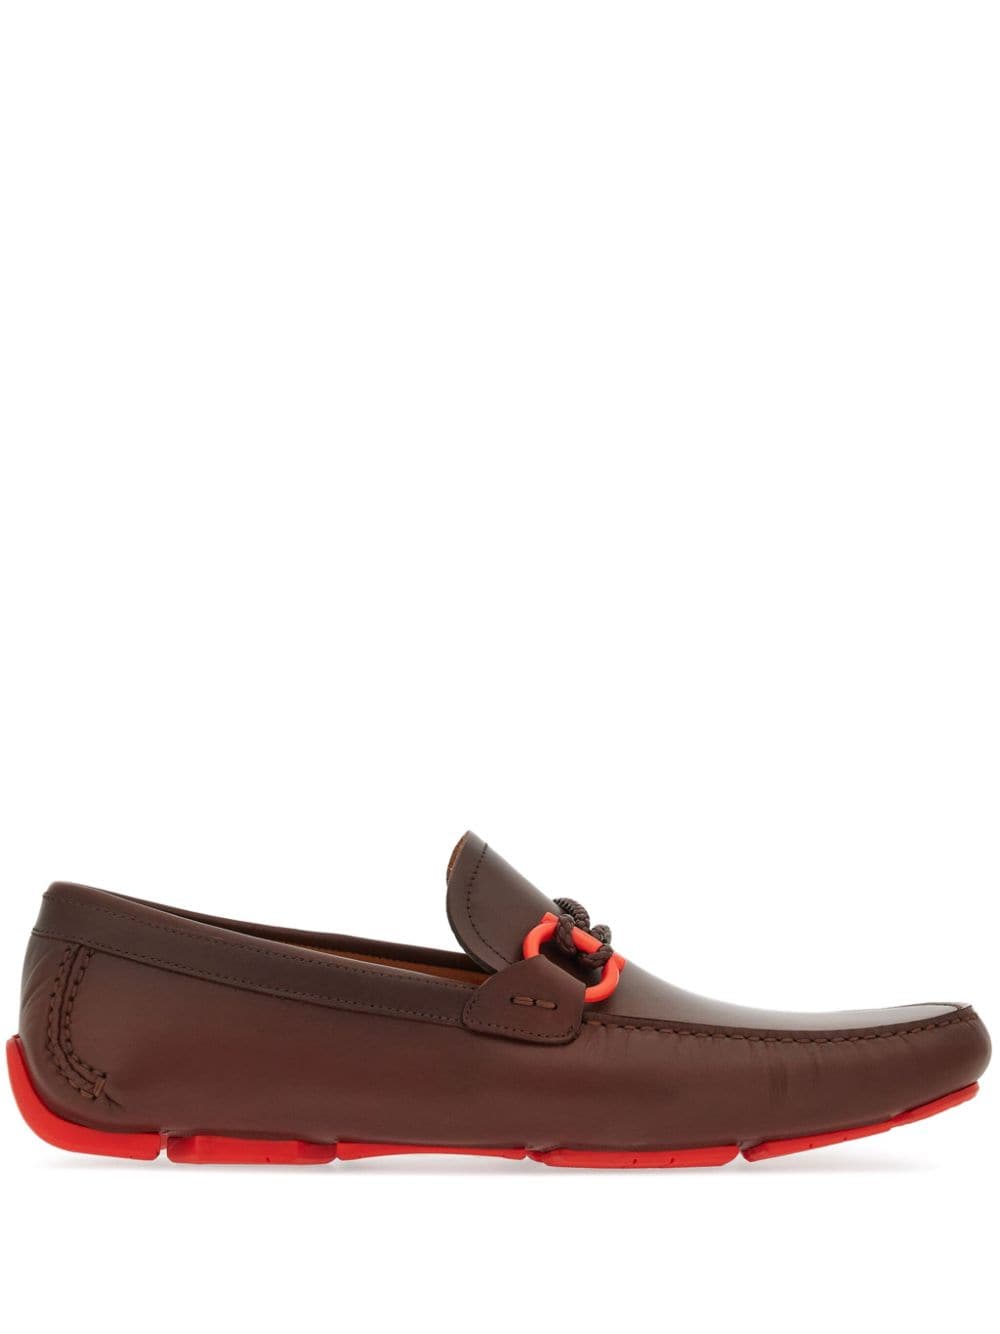 Ferragamo Gancini leather loafers - Brown von Ferragamo